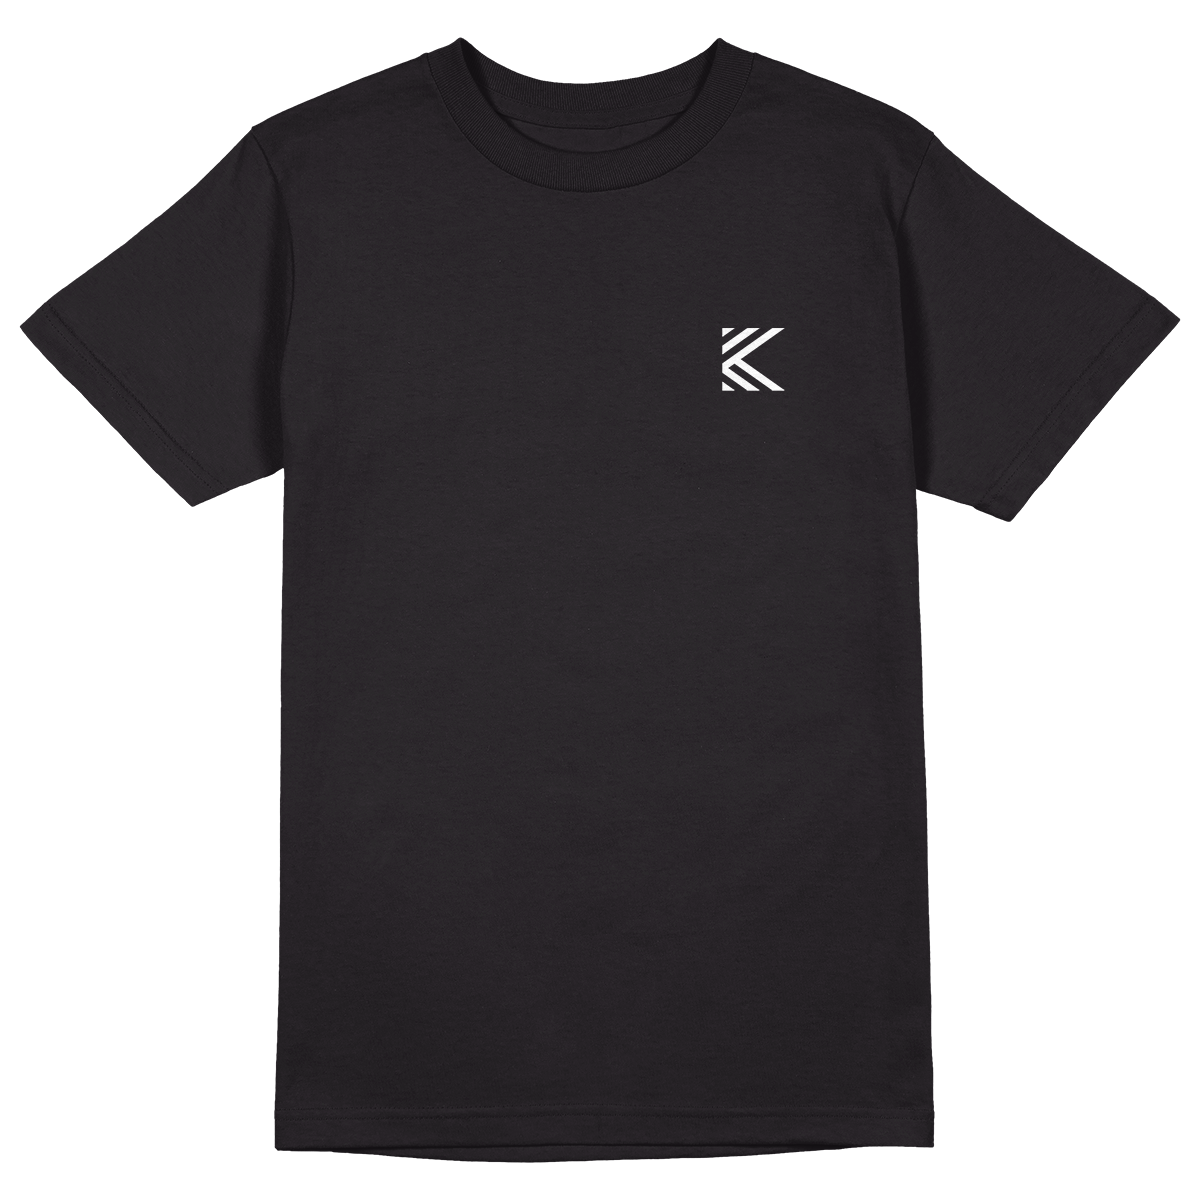 Topfanz T-shirt noir "DE K"